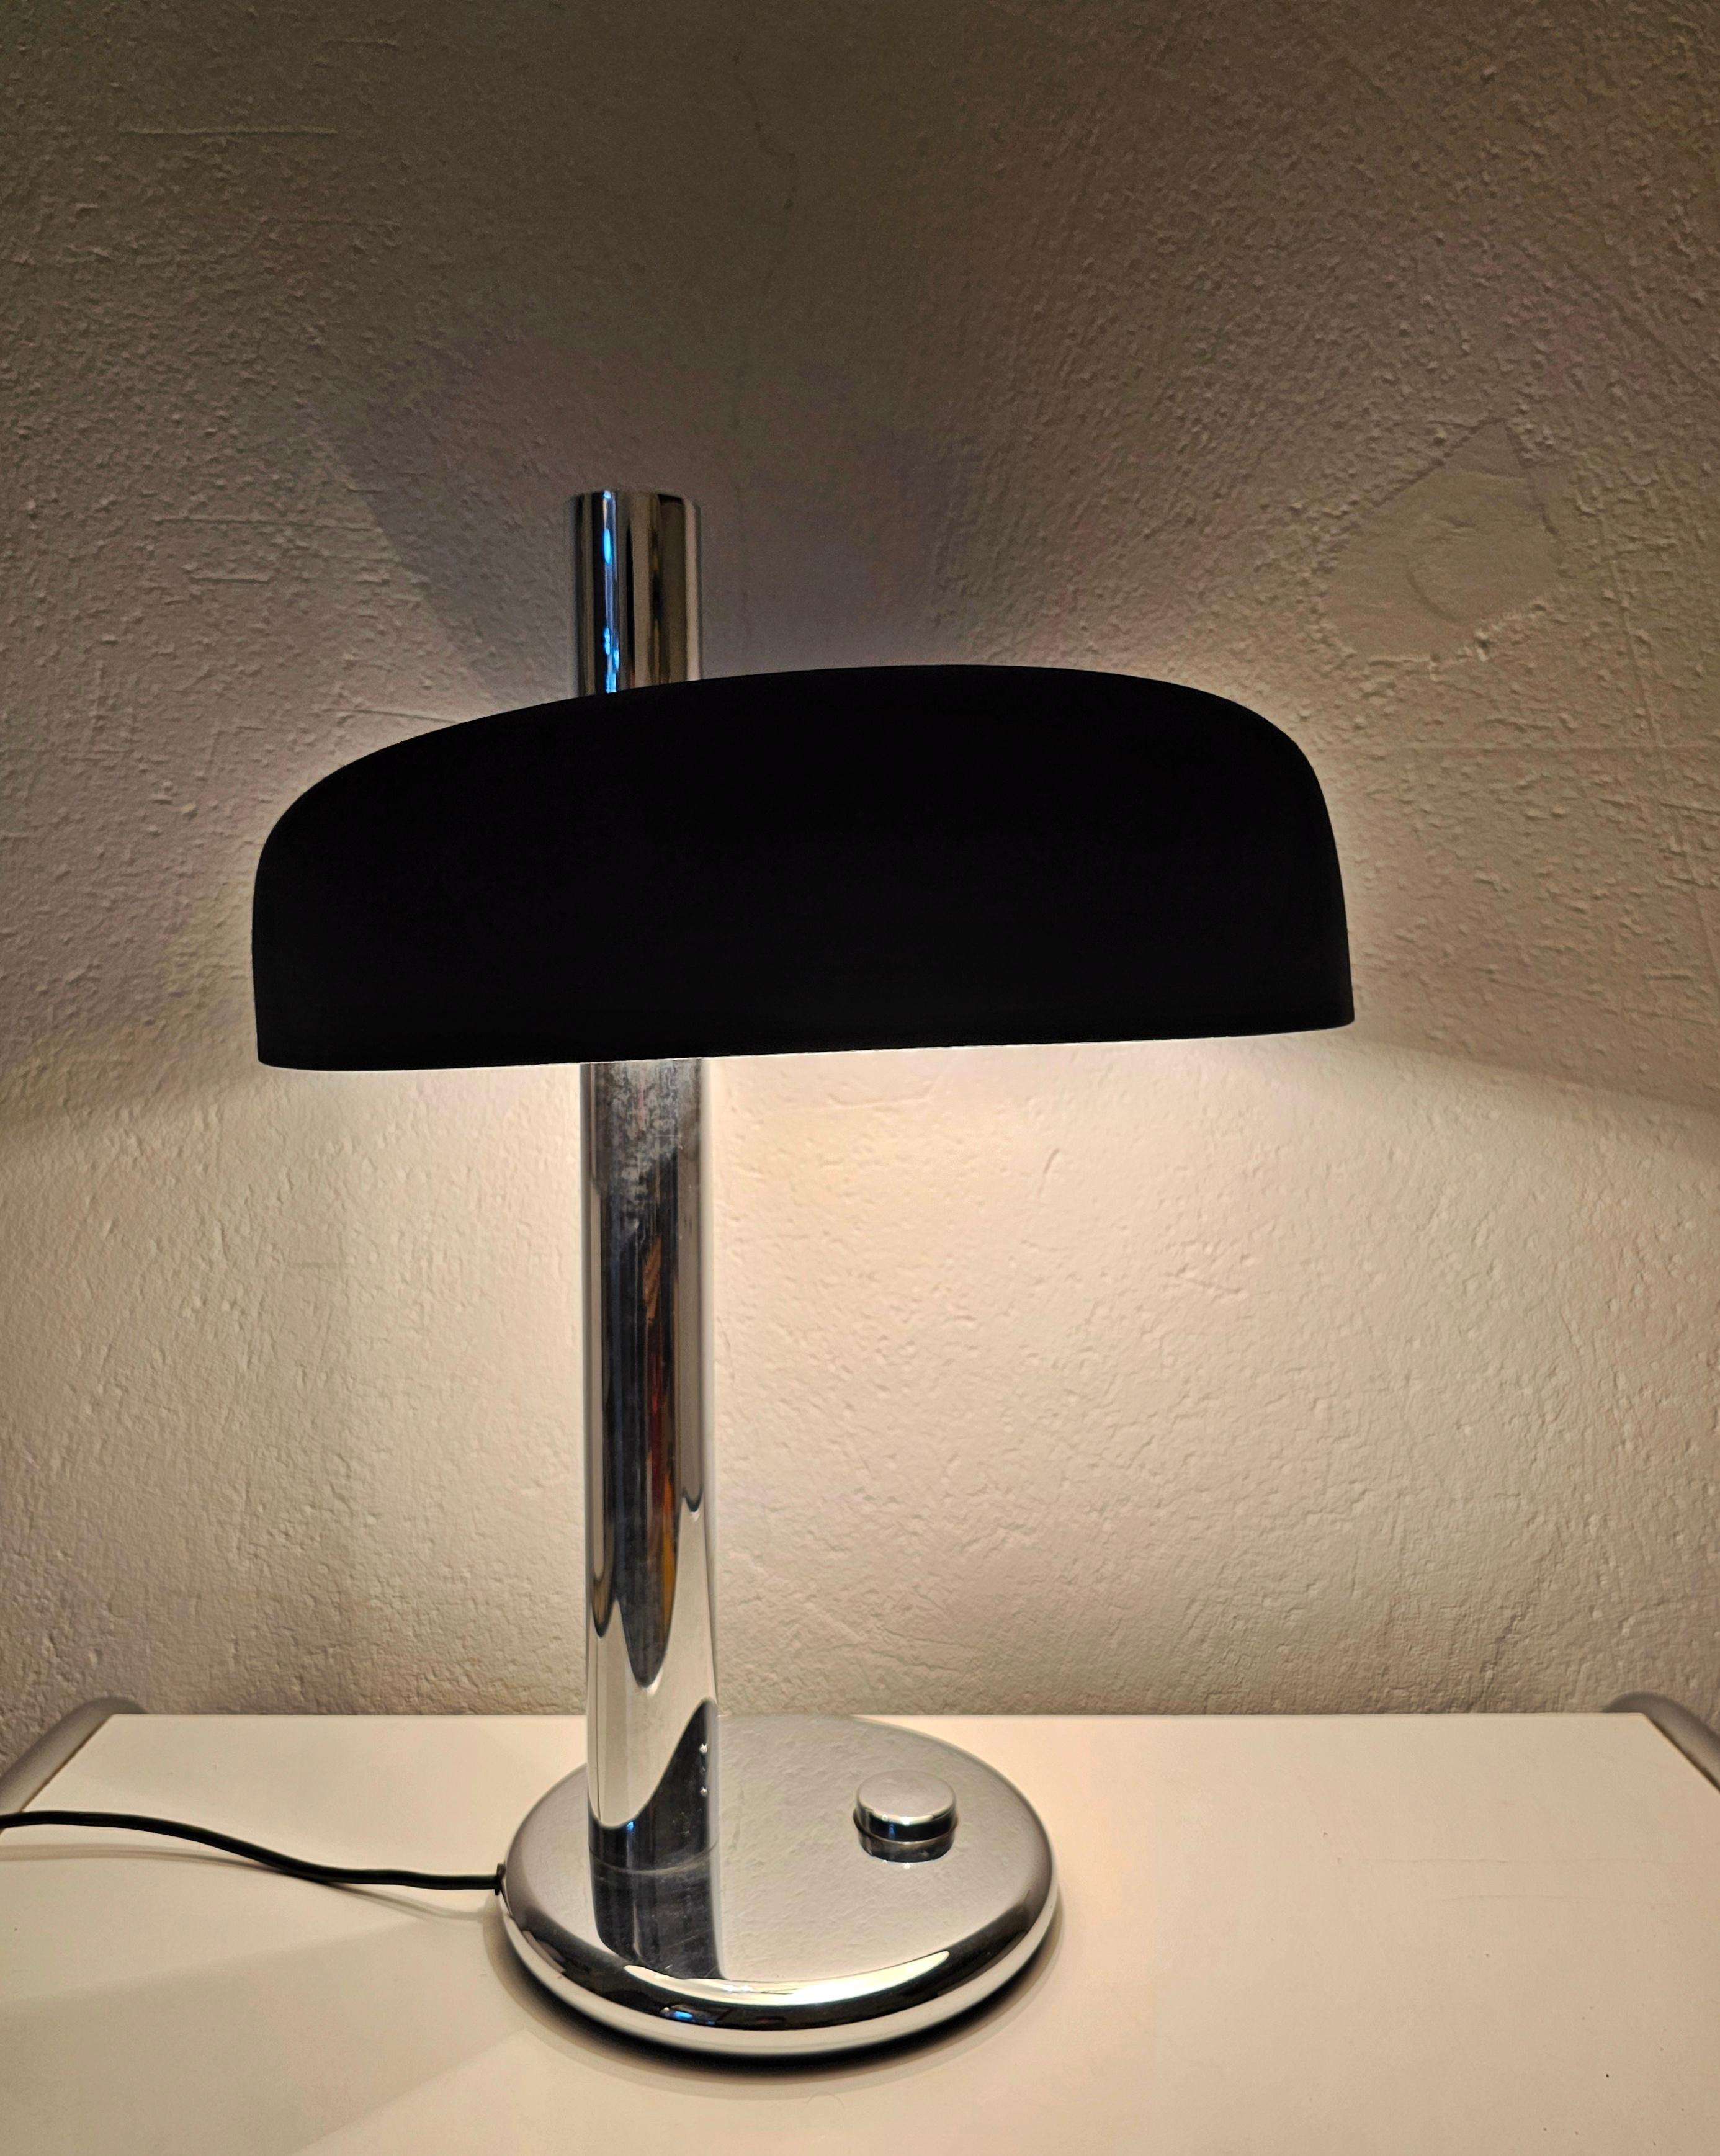 Vous trouverez dans cette annonce une spectaculaire lampe de table de style Bauhaus, Design-Light, modèle 7603, qui a été conçue par Heinz Pfaender pour le fabricant allemand Hillebrand, connu pour ses luminaires de la plus haute qualité. Elle